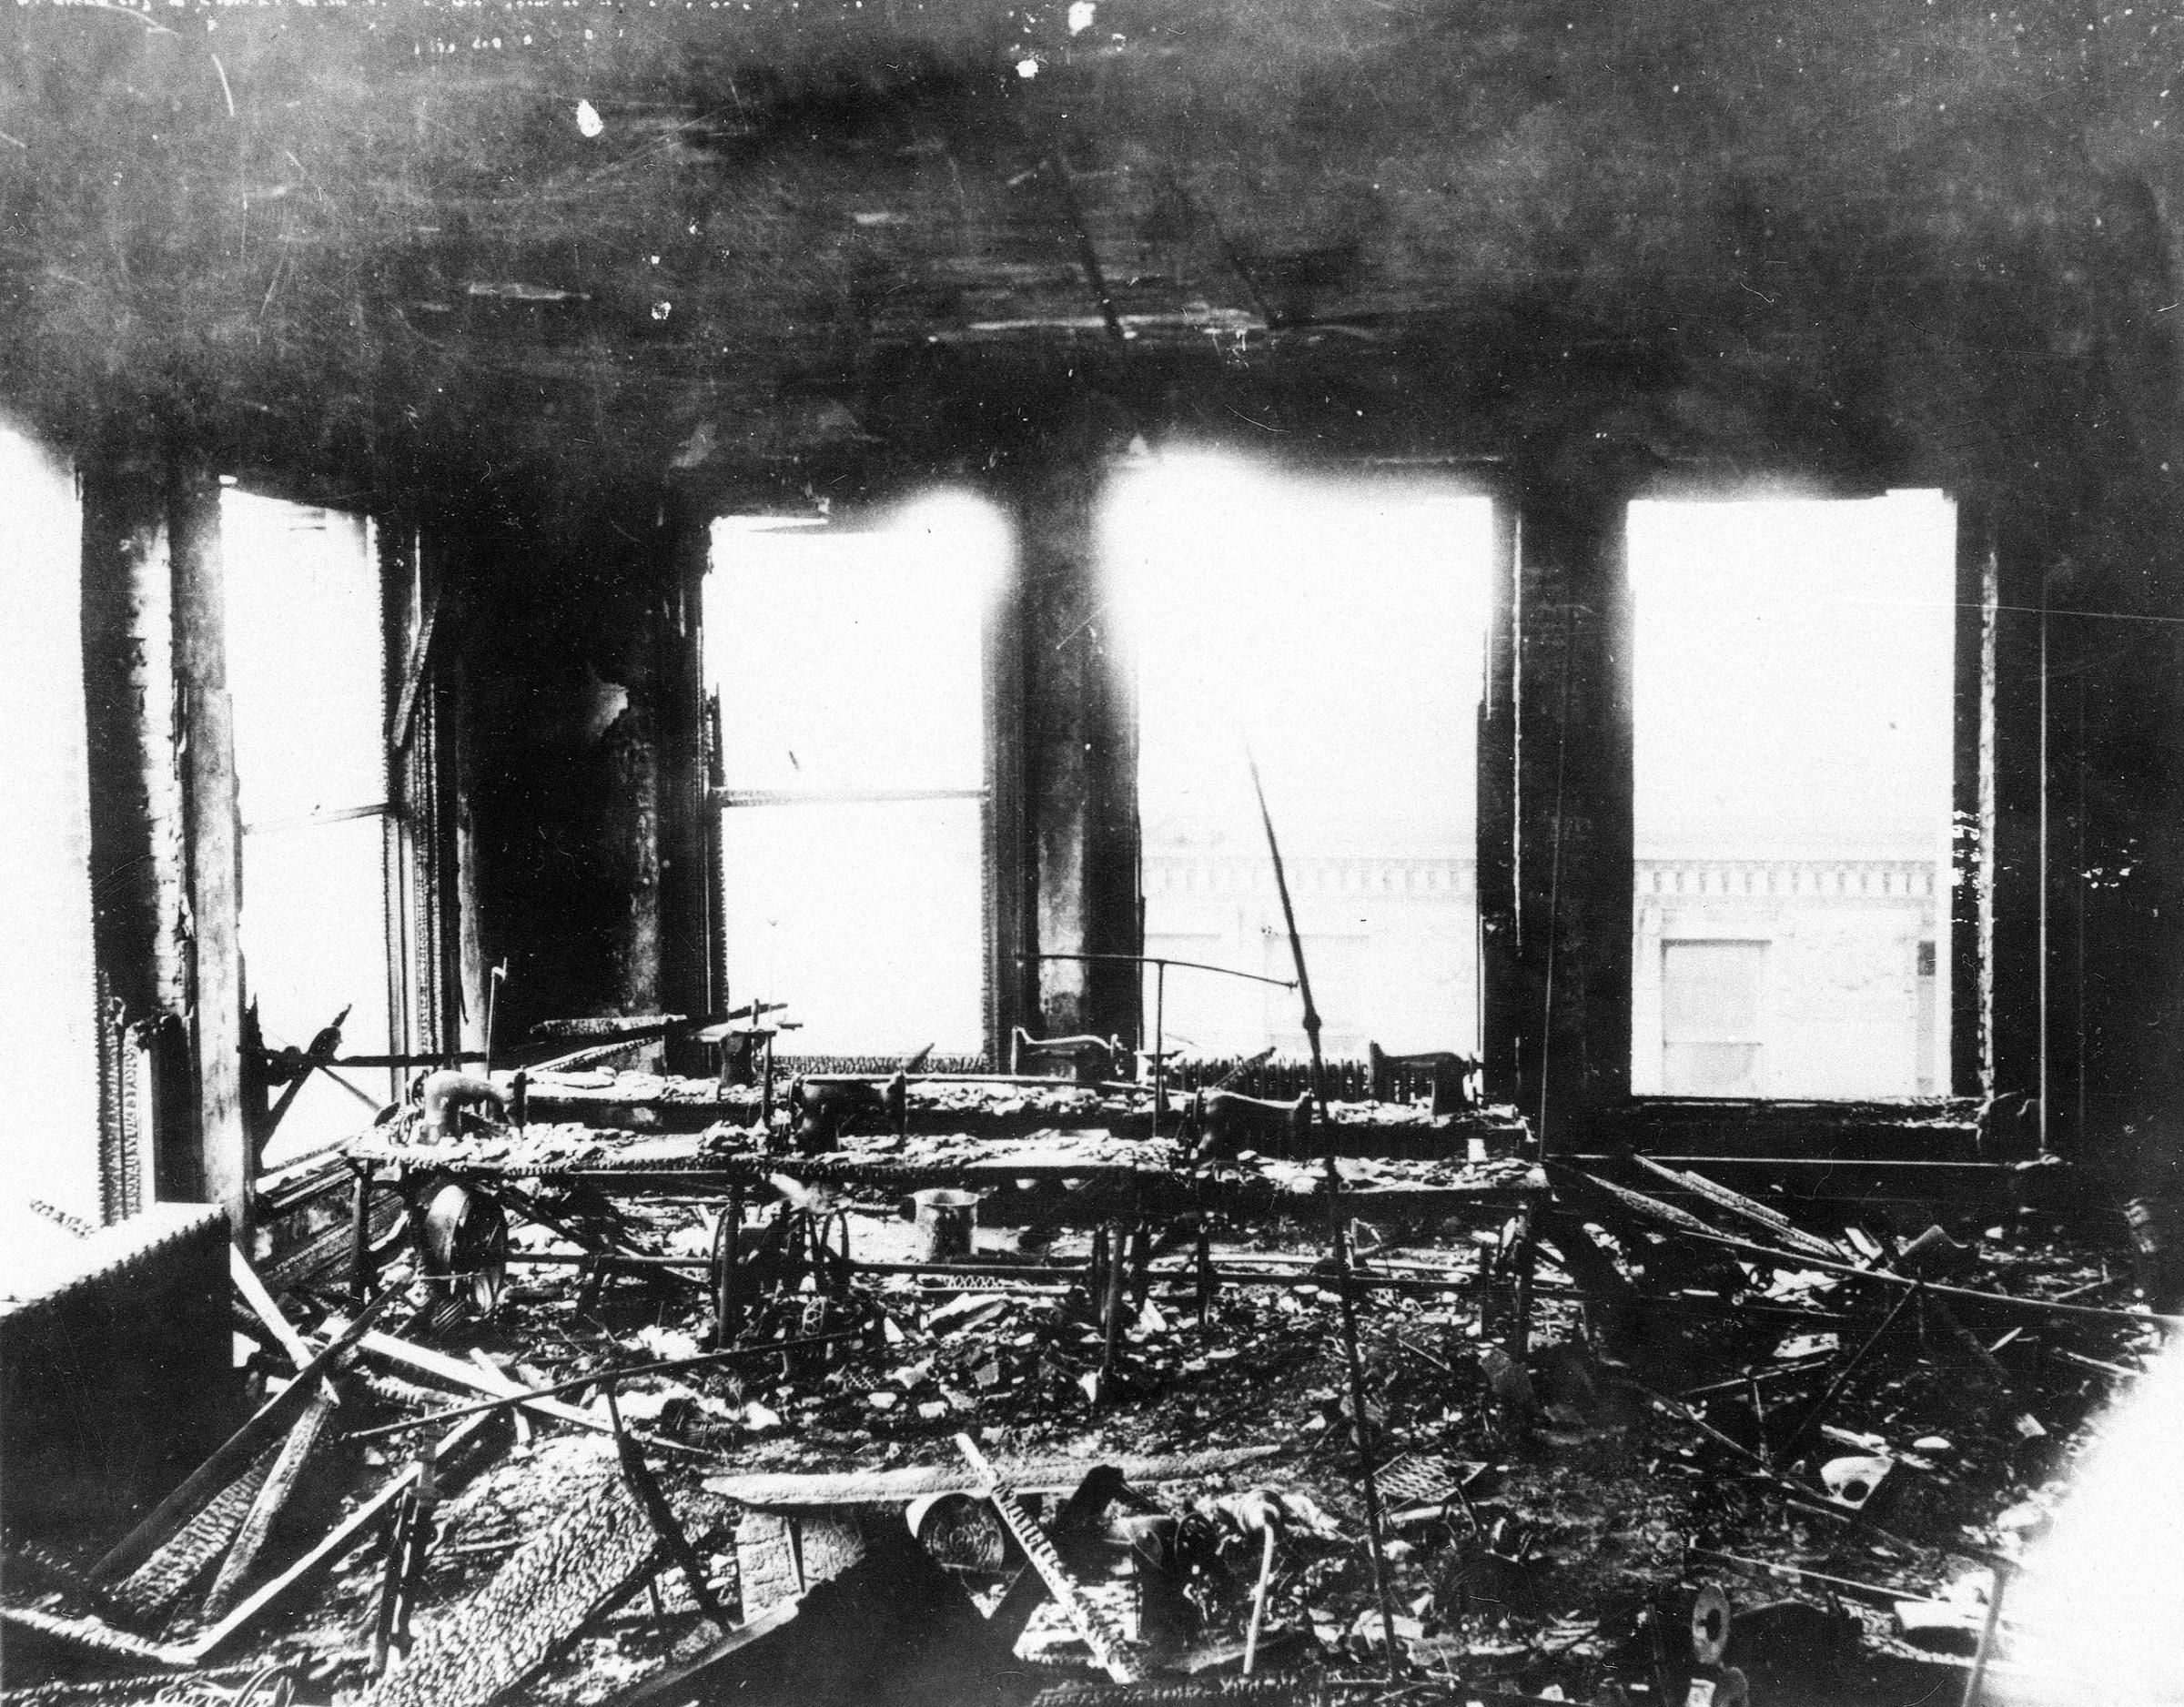 Triangle Shirtwaist Company Fire Aftermath fire, 1911